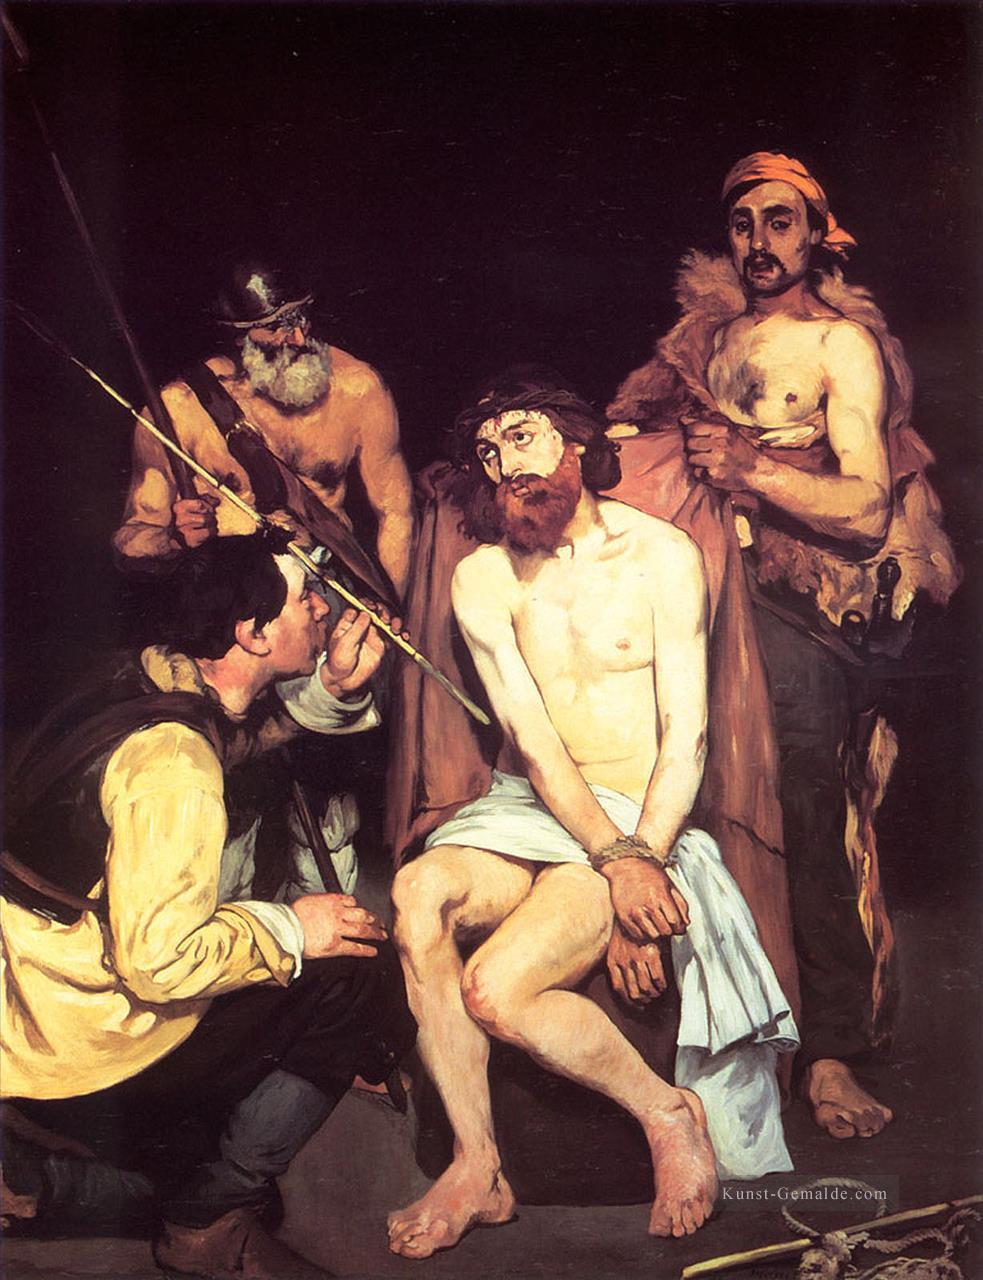 Jesus verspottet von den Soldaten Realismus Impressionismus Edouard Manet Ölgemälde